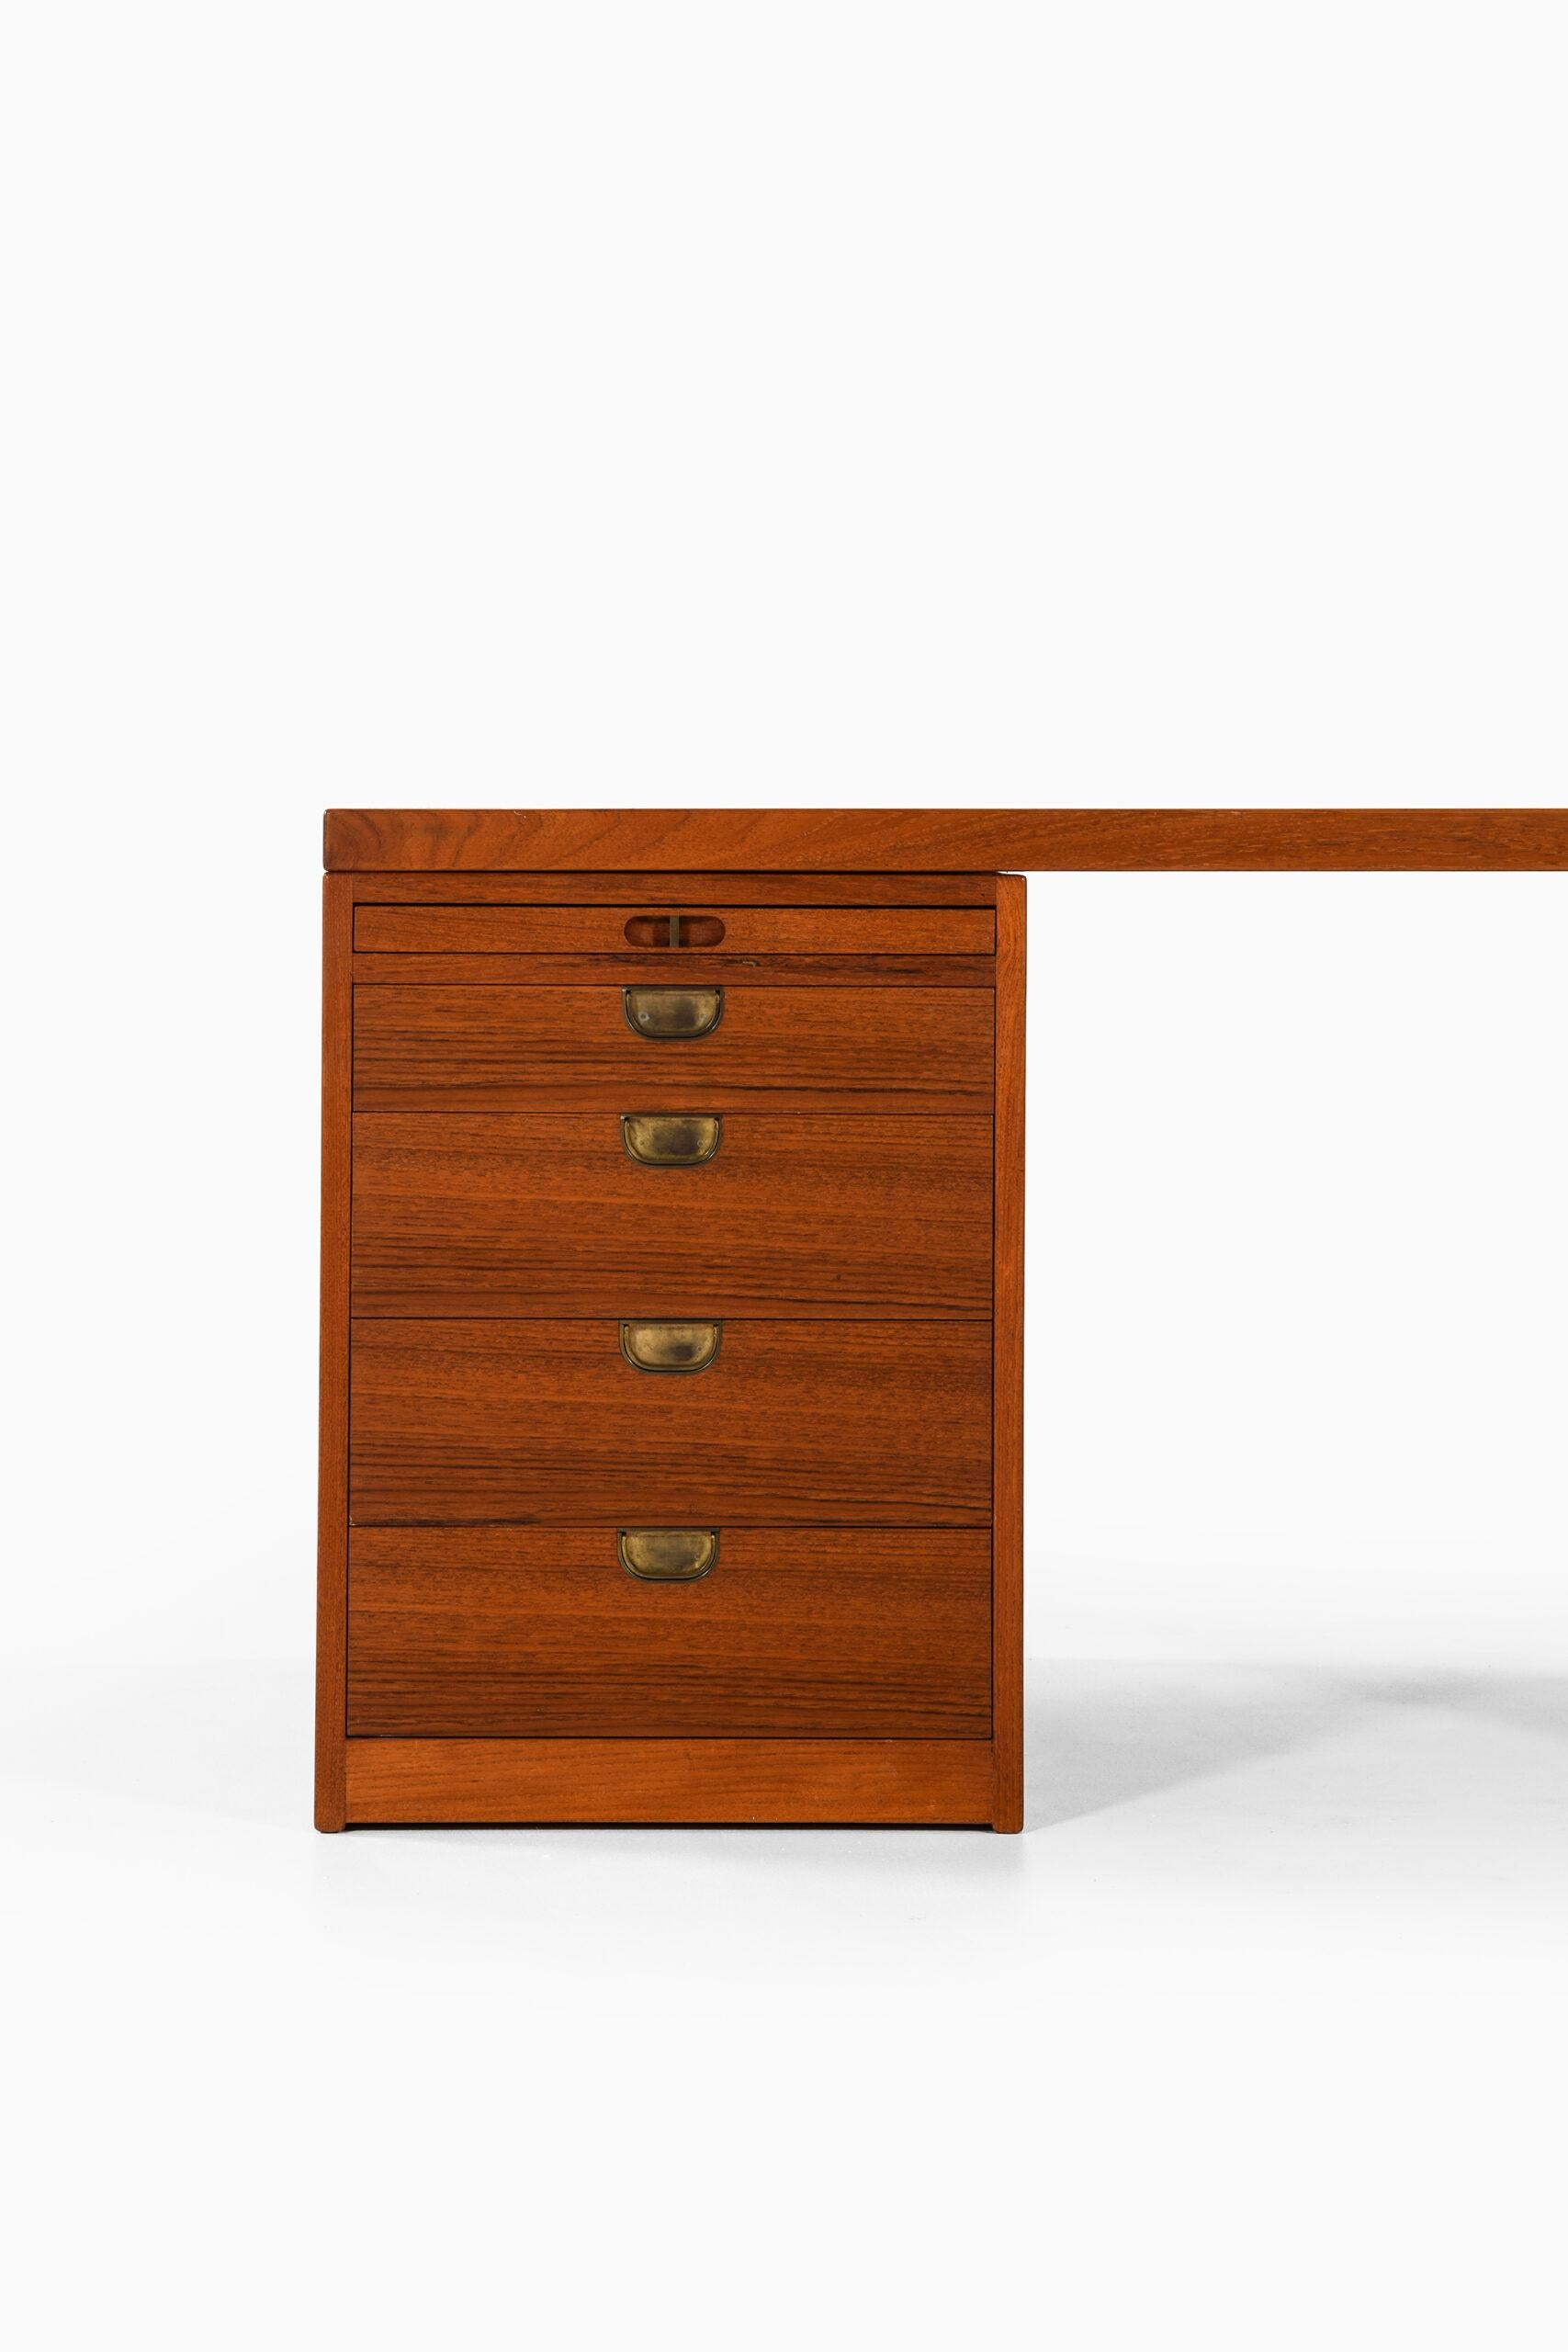 Rare freestanding desk designed by Børge Mogensen. Produced by cabinetmaker P. Lauritsen & Søn in Denmark.